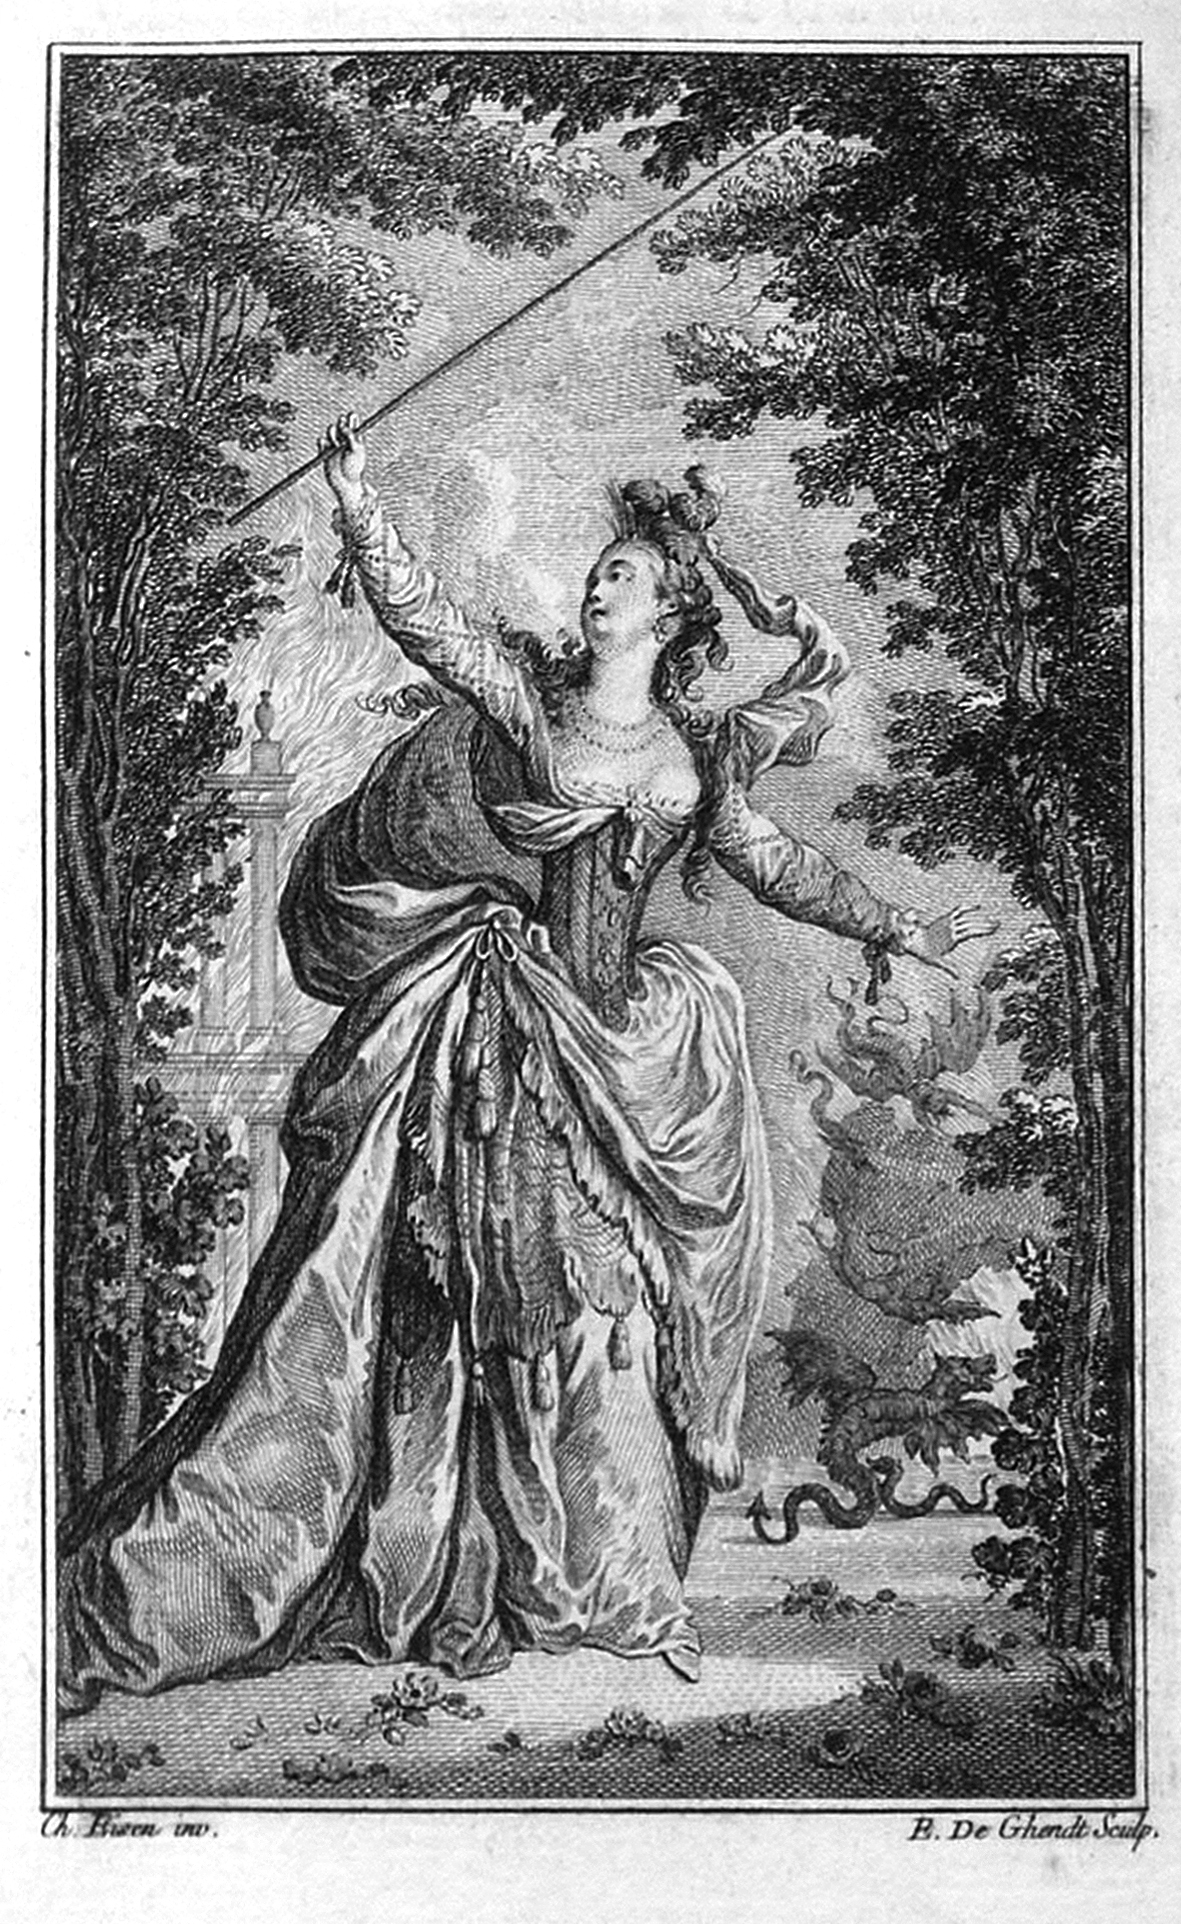 La Danse et L'Opéra d'Eisen (1720-1778), gravures réalisées par de Ghendt pour La déclamation théâtre, poème didactique, 1771 et 1766 (BHVP). Clichés Sabine Chaouche.